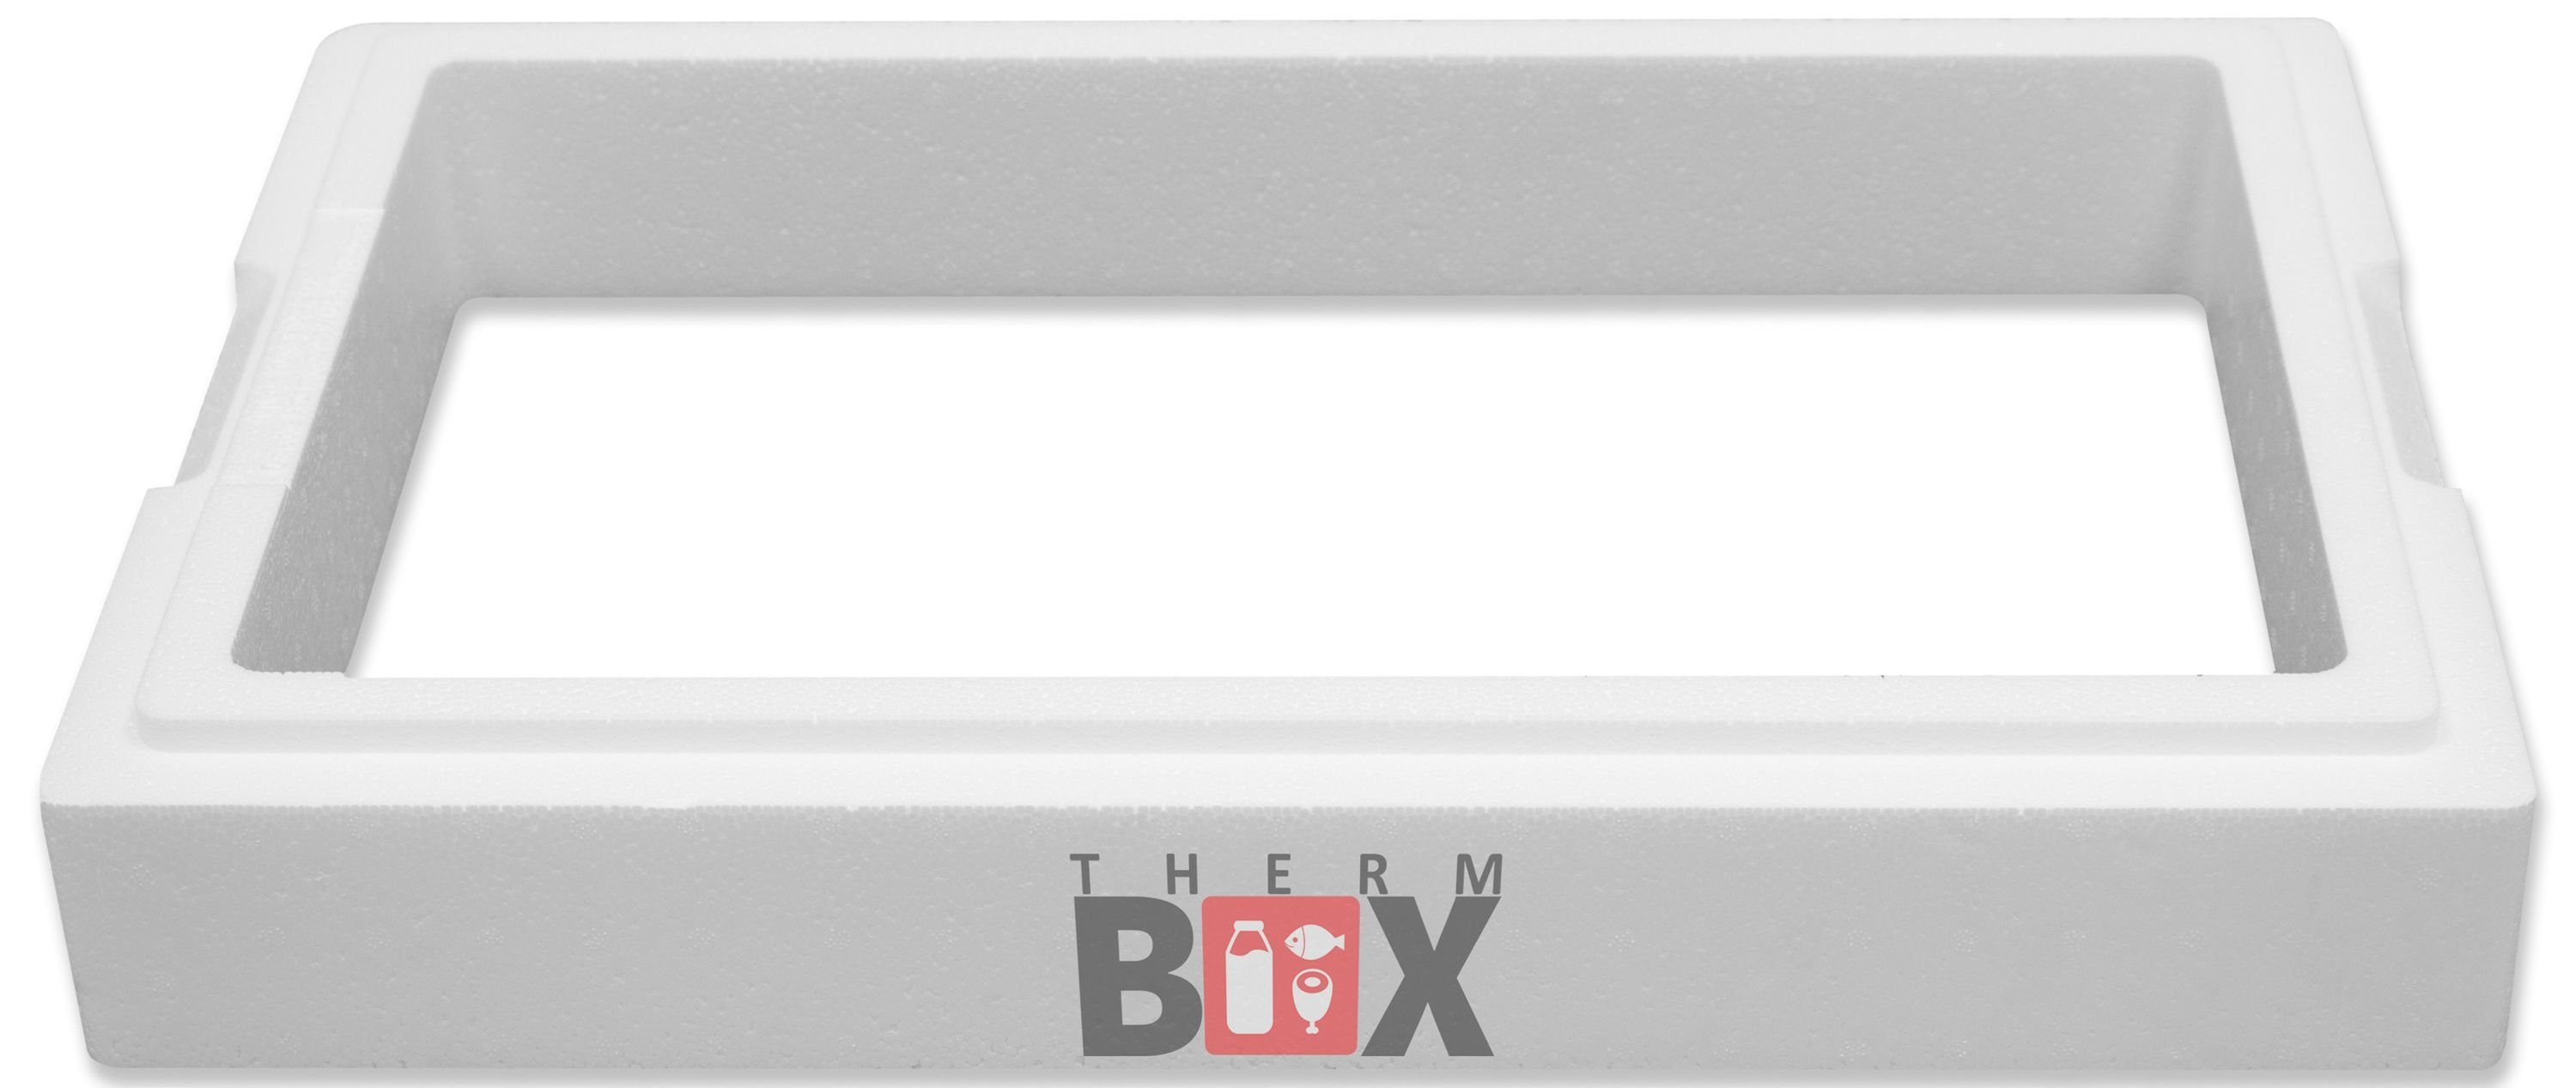 THERM-BOX Thermobehälter Modular Zusatzring 11M (1-tlg., 11,9L Wand: Styropor-Verdichtet, 1 Kühlbox Wiederverwendbar Isolierbox Thermbox 4cm Warmhaltebox Zusatzring), Innenmaß:49x30x8cm, Erweiterbar